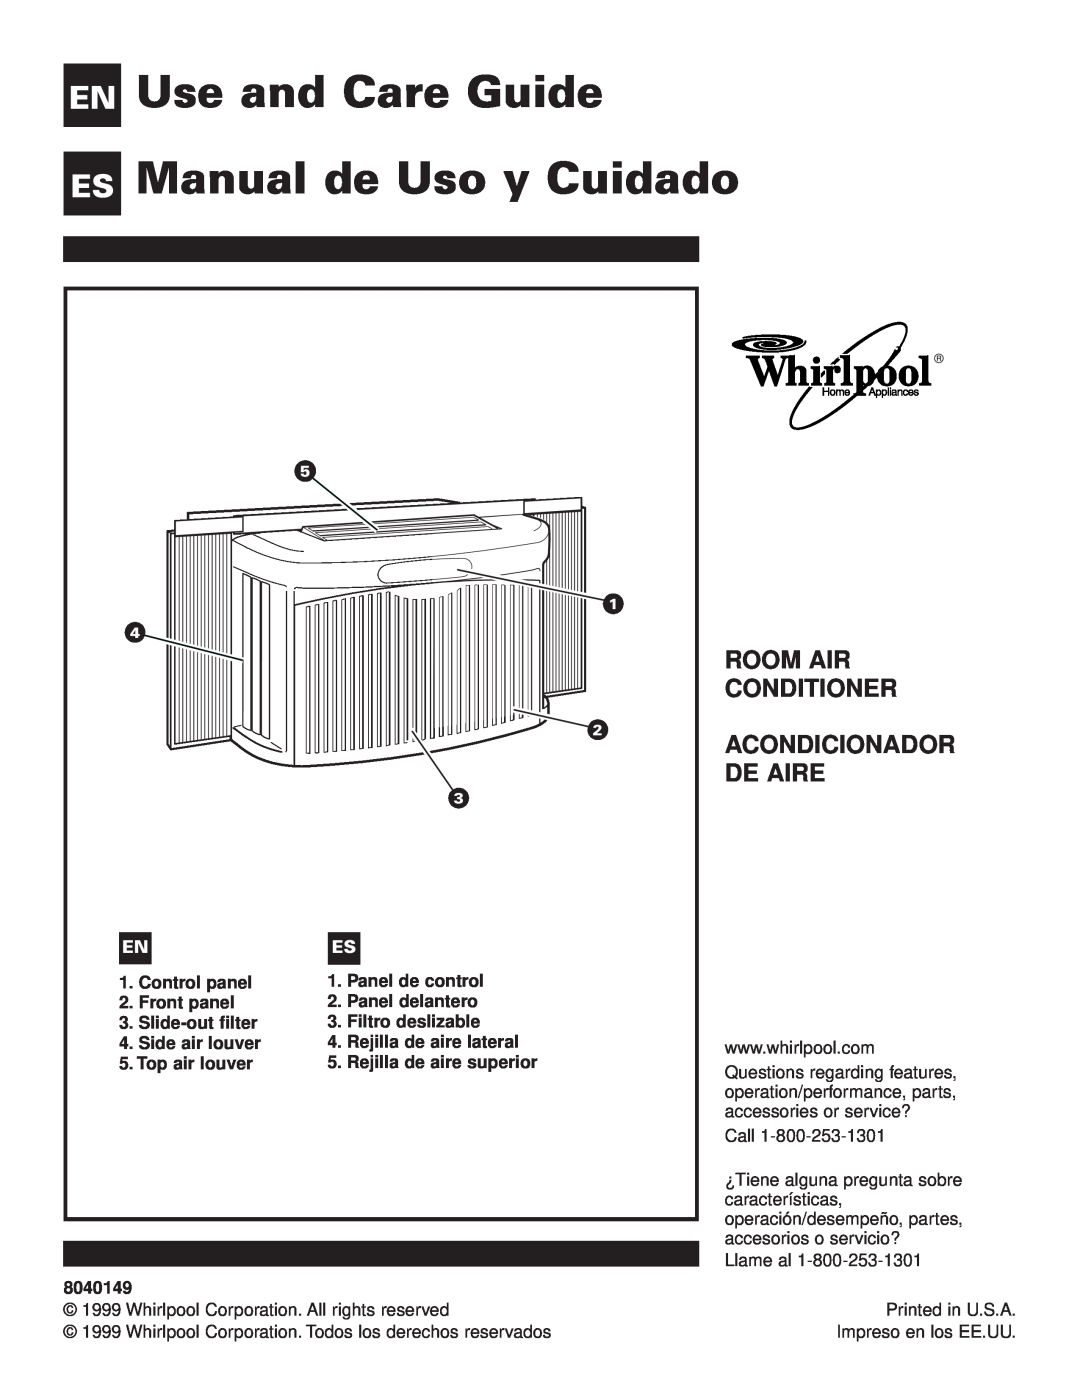 Whirlpool ACG052XJ0 manual Use and Care Guide Manual de Uso y Cuidado, En Es, Room Air Conditioner Acondicionador De Aire 